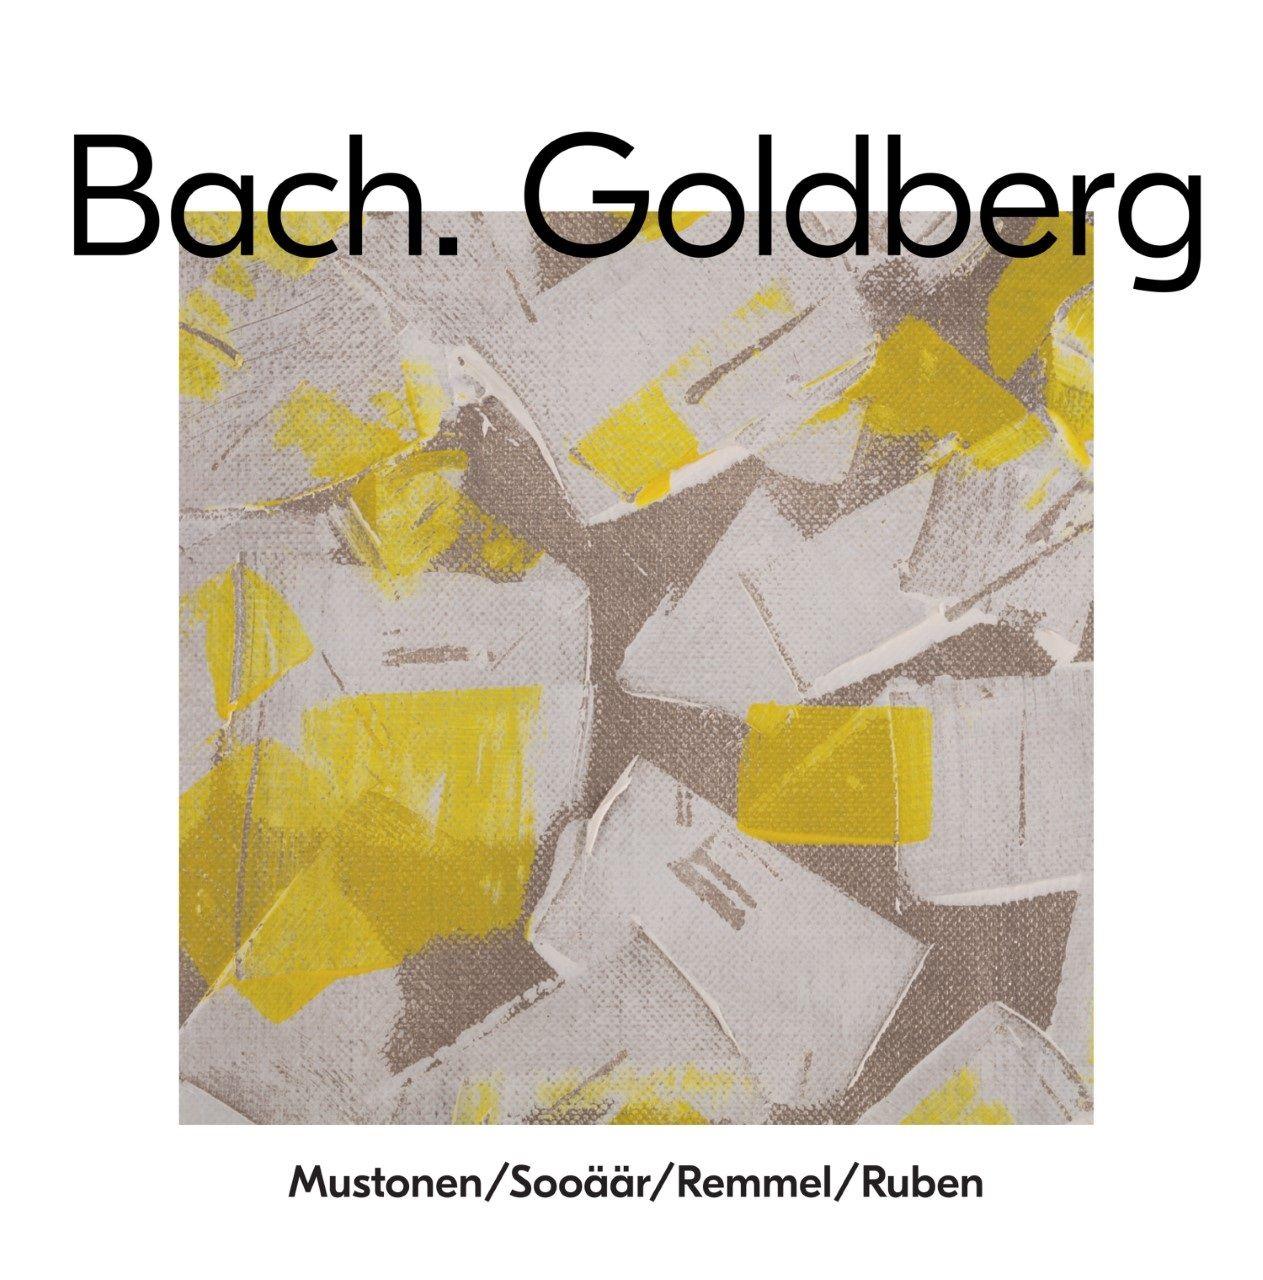 MUSTONEN, SOOÄÄR, REMMEL, RUBEN - BACH. GOLDBERG (2020) CD